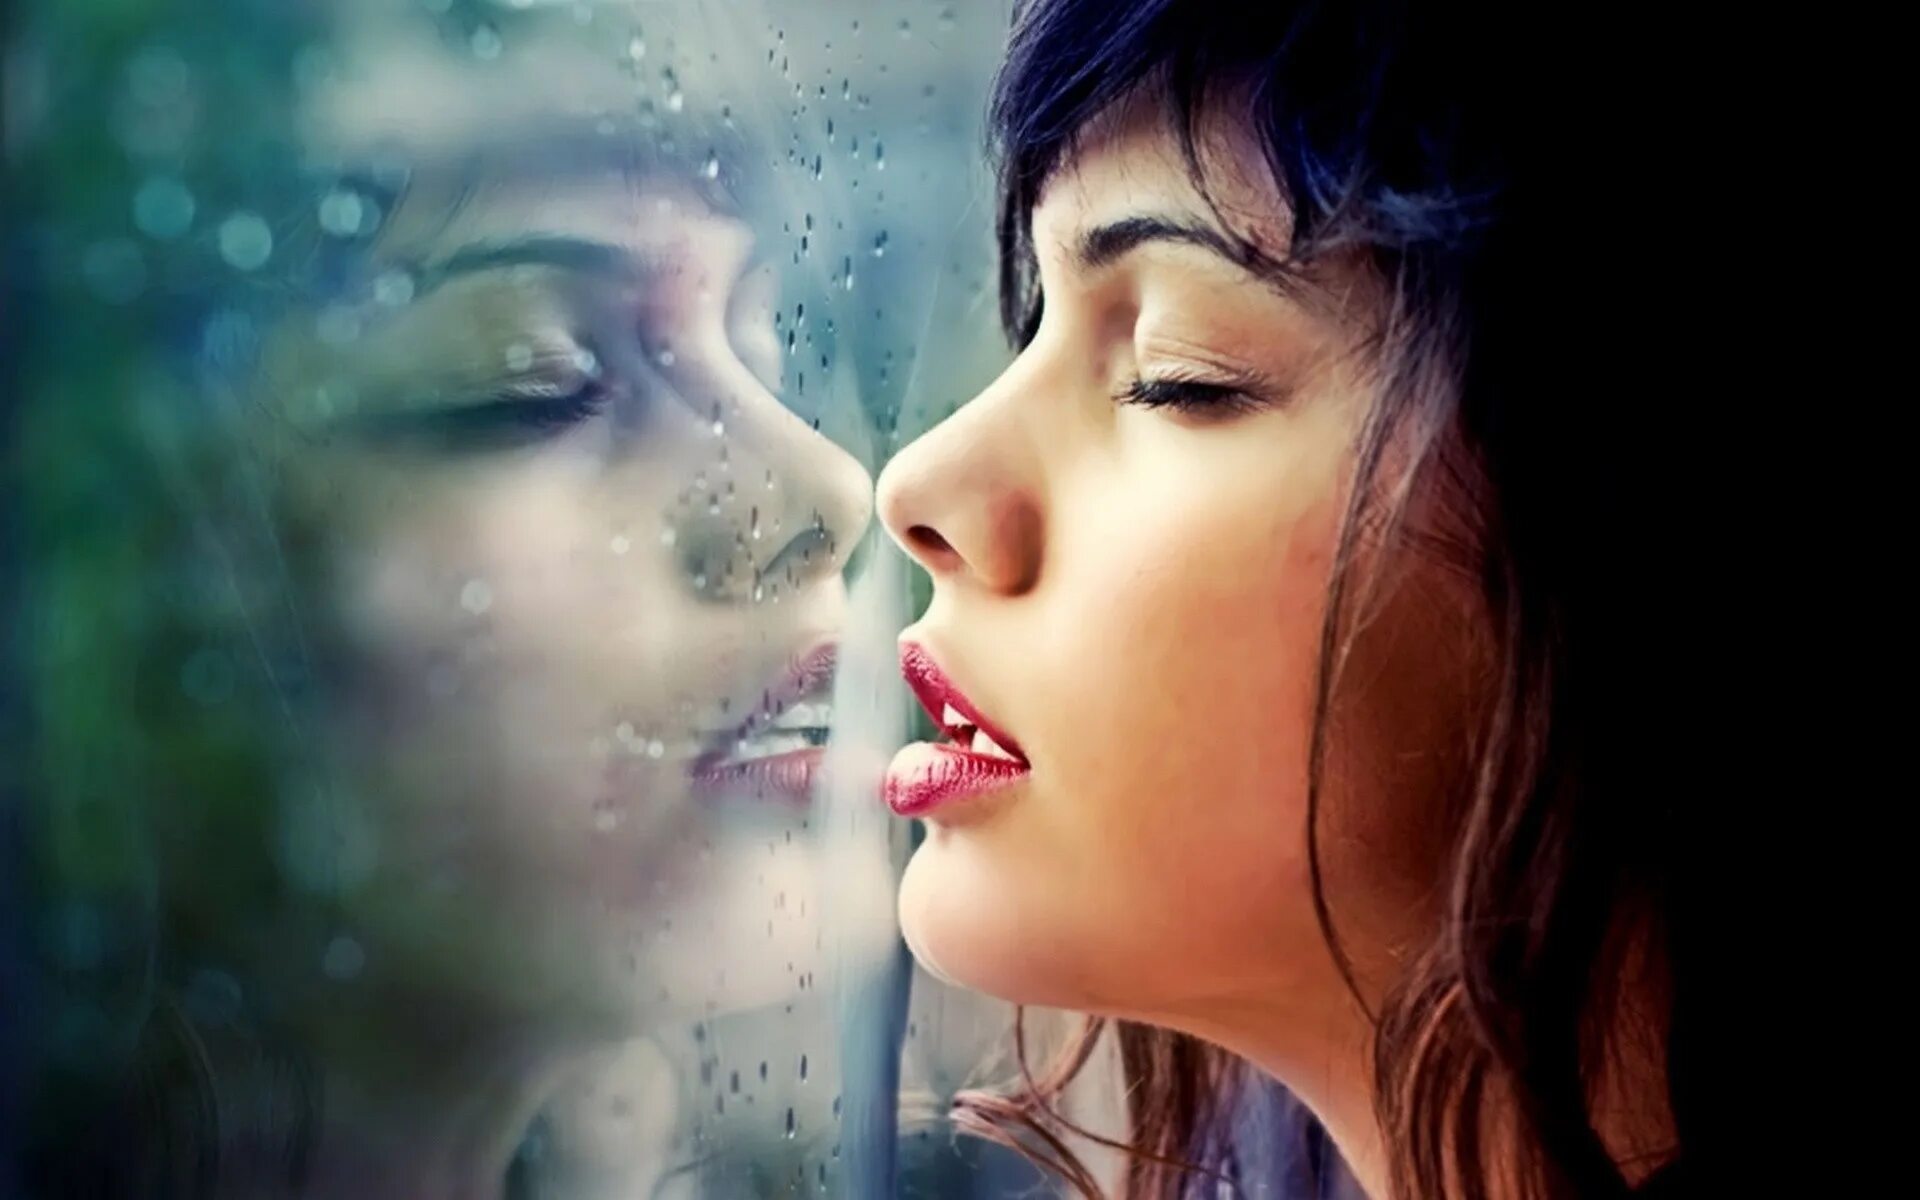 Reflection woman. Девушка в слезах. Девушка плачет. Девушка целует свое отражение. Заплаканное лицо девушки.